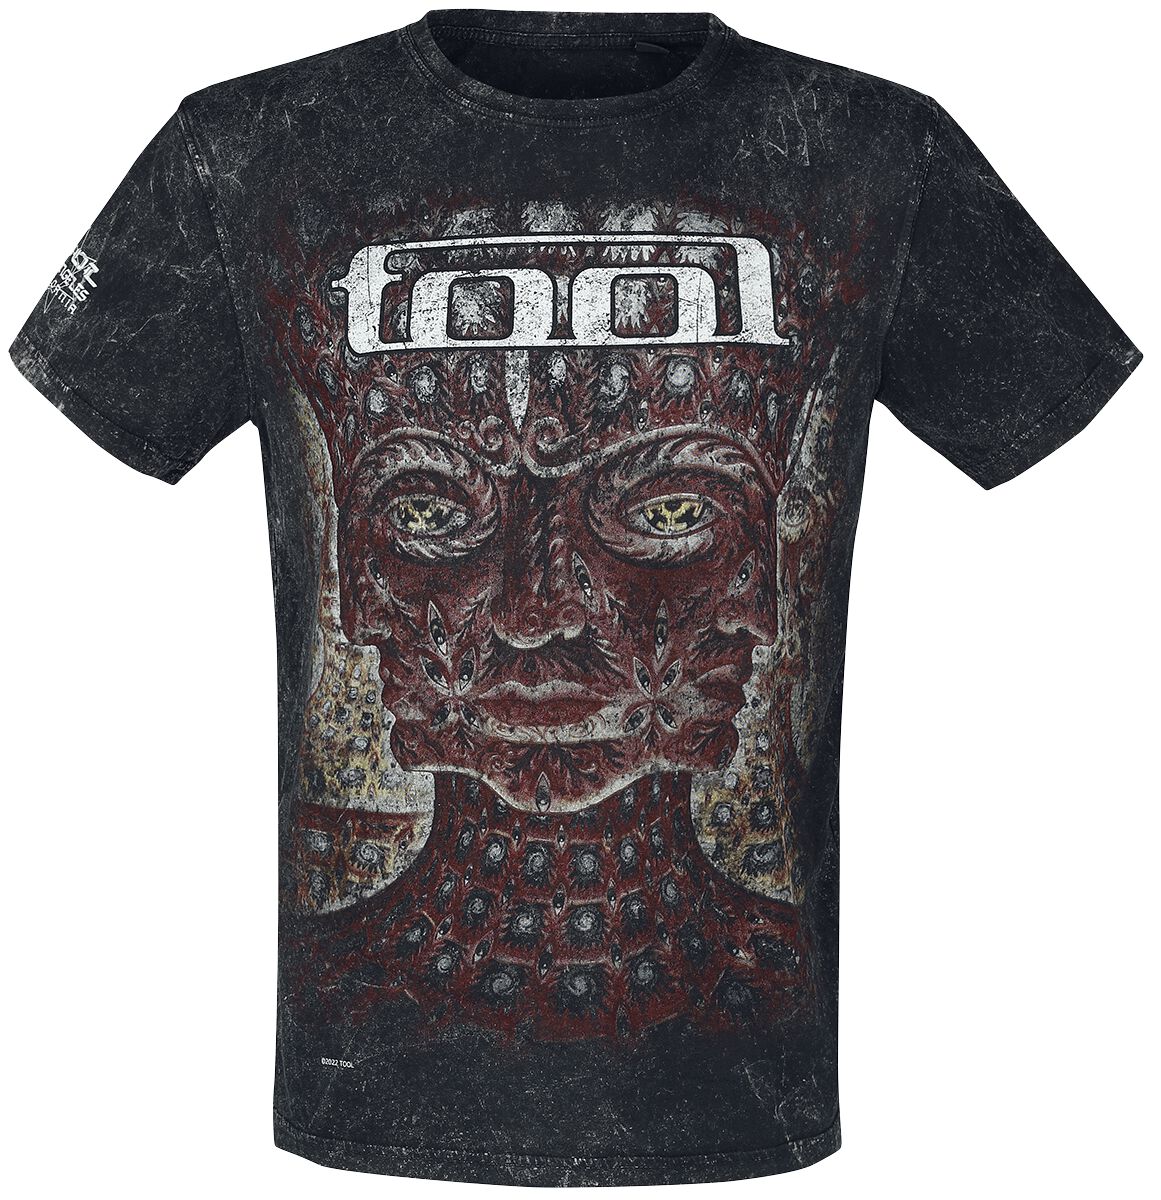 Tool T-Shirt - Lateralus - S bis 3XL - für Männer - Größe 3XL - schwarz  - Lizenziertes Merchandise!